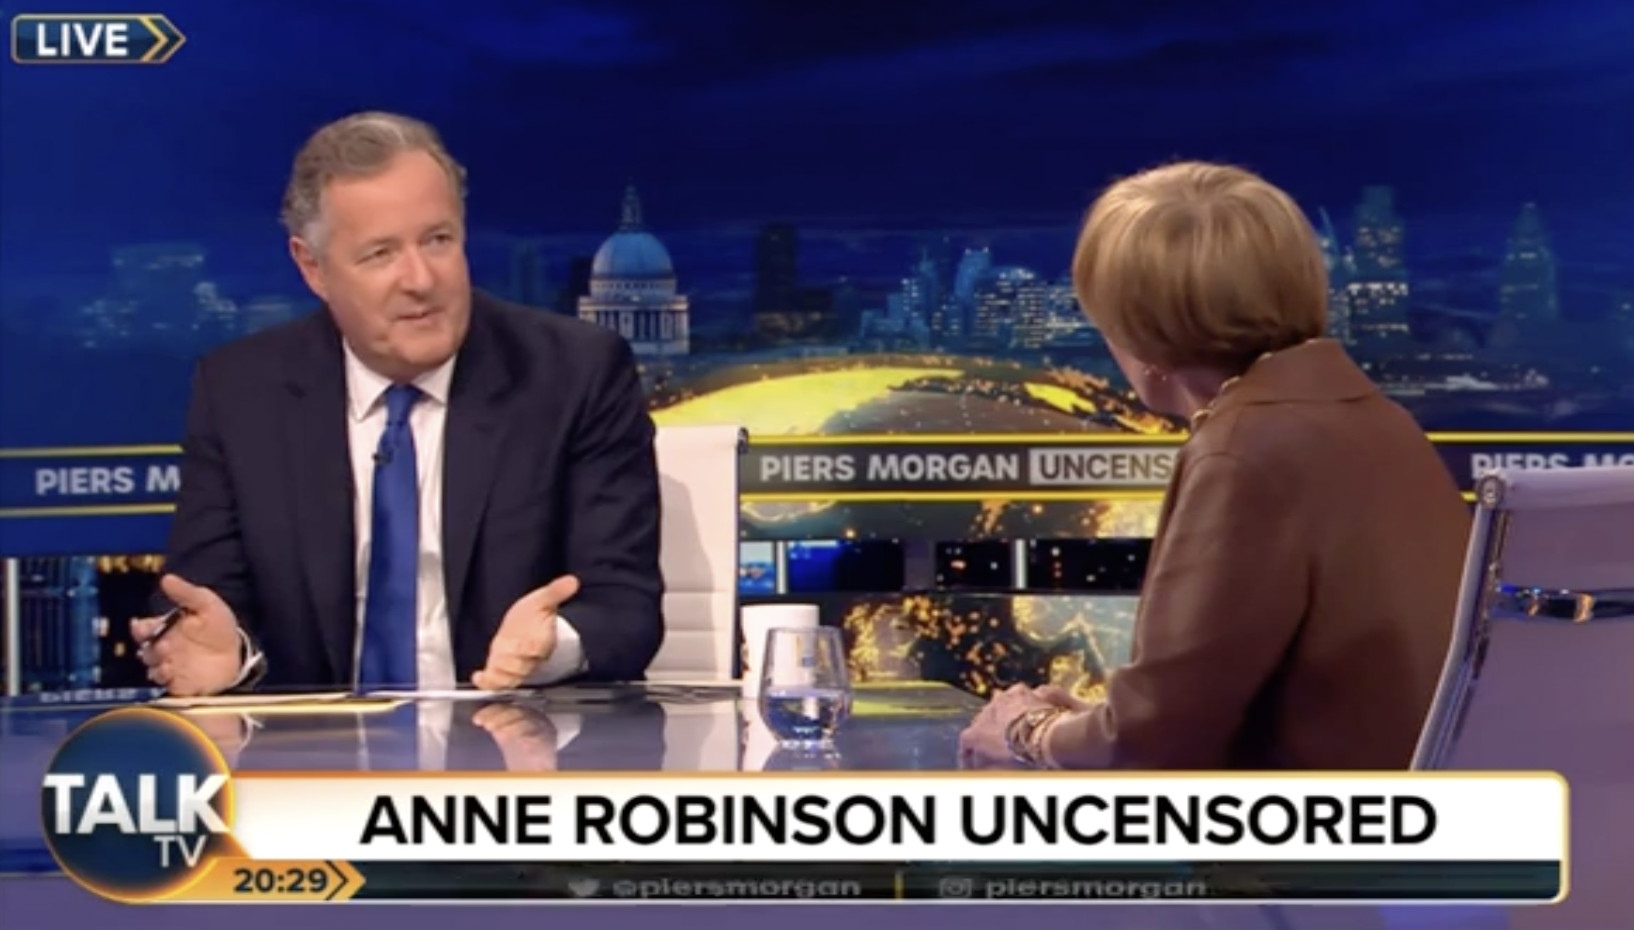 Anne Robinson sprach über ihre Zeit bei Countdown mit Piers Morgan